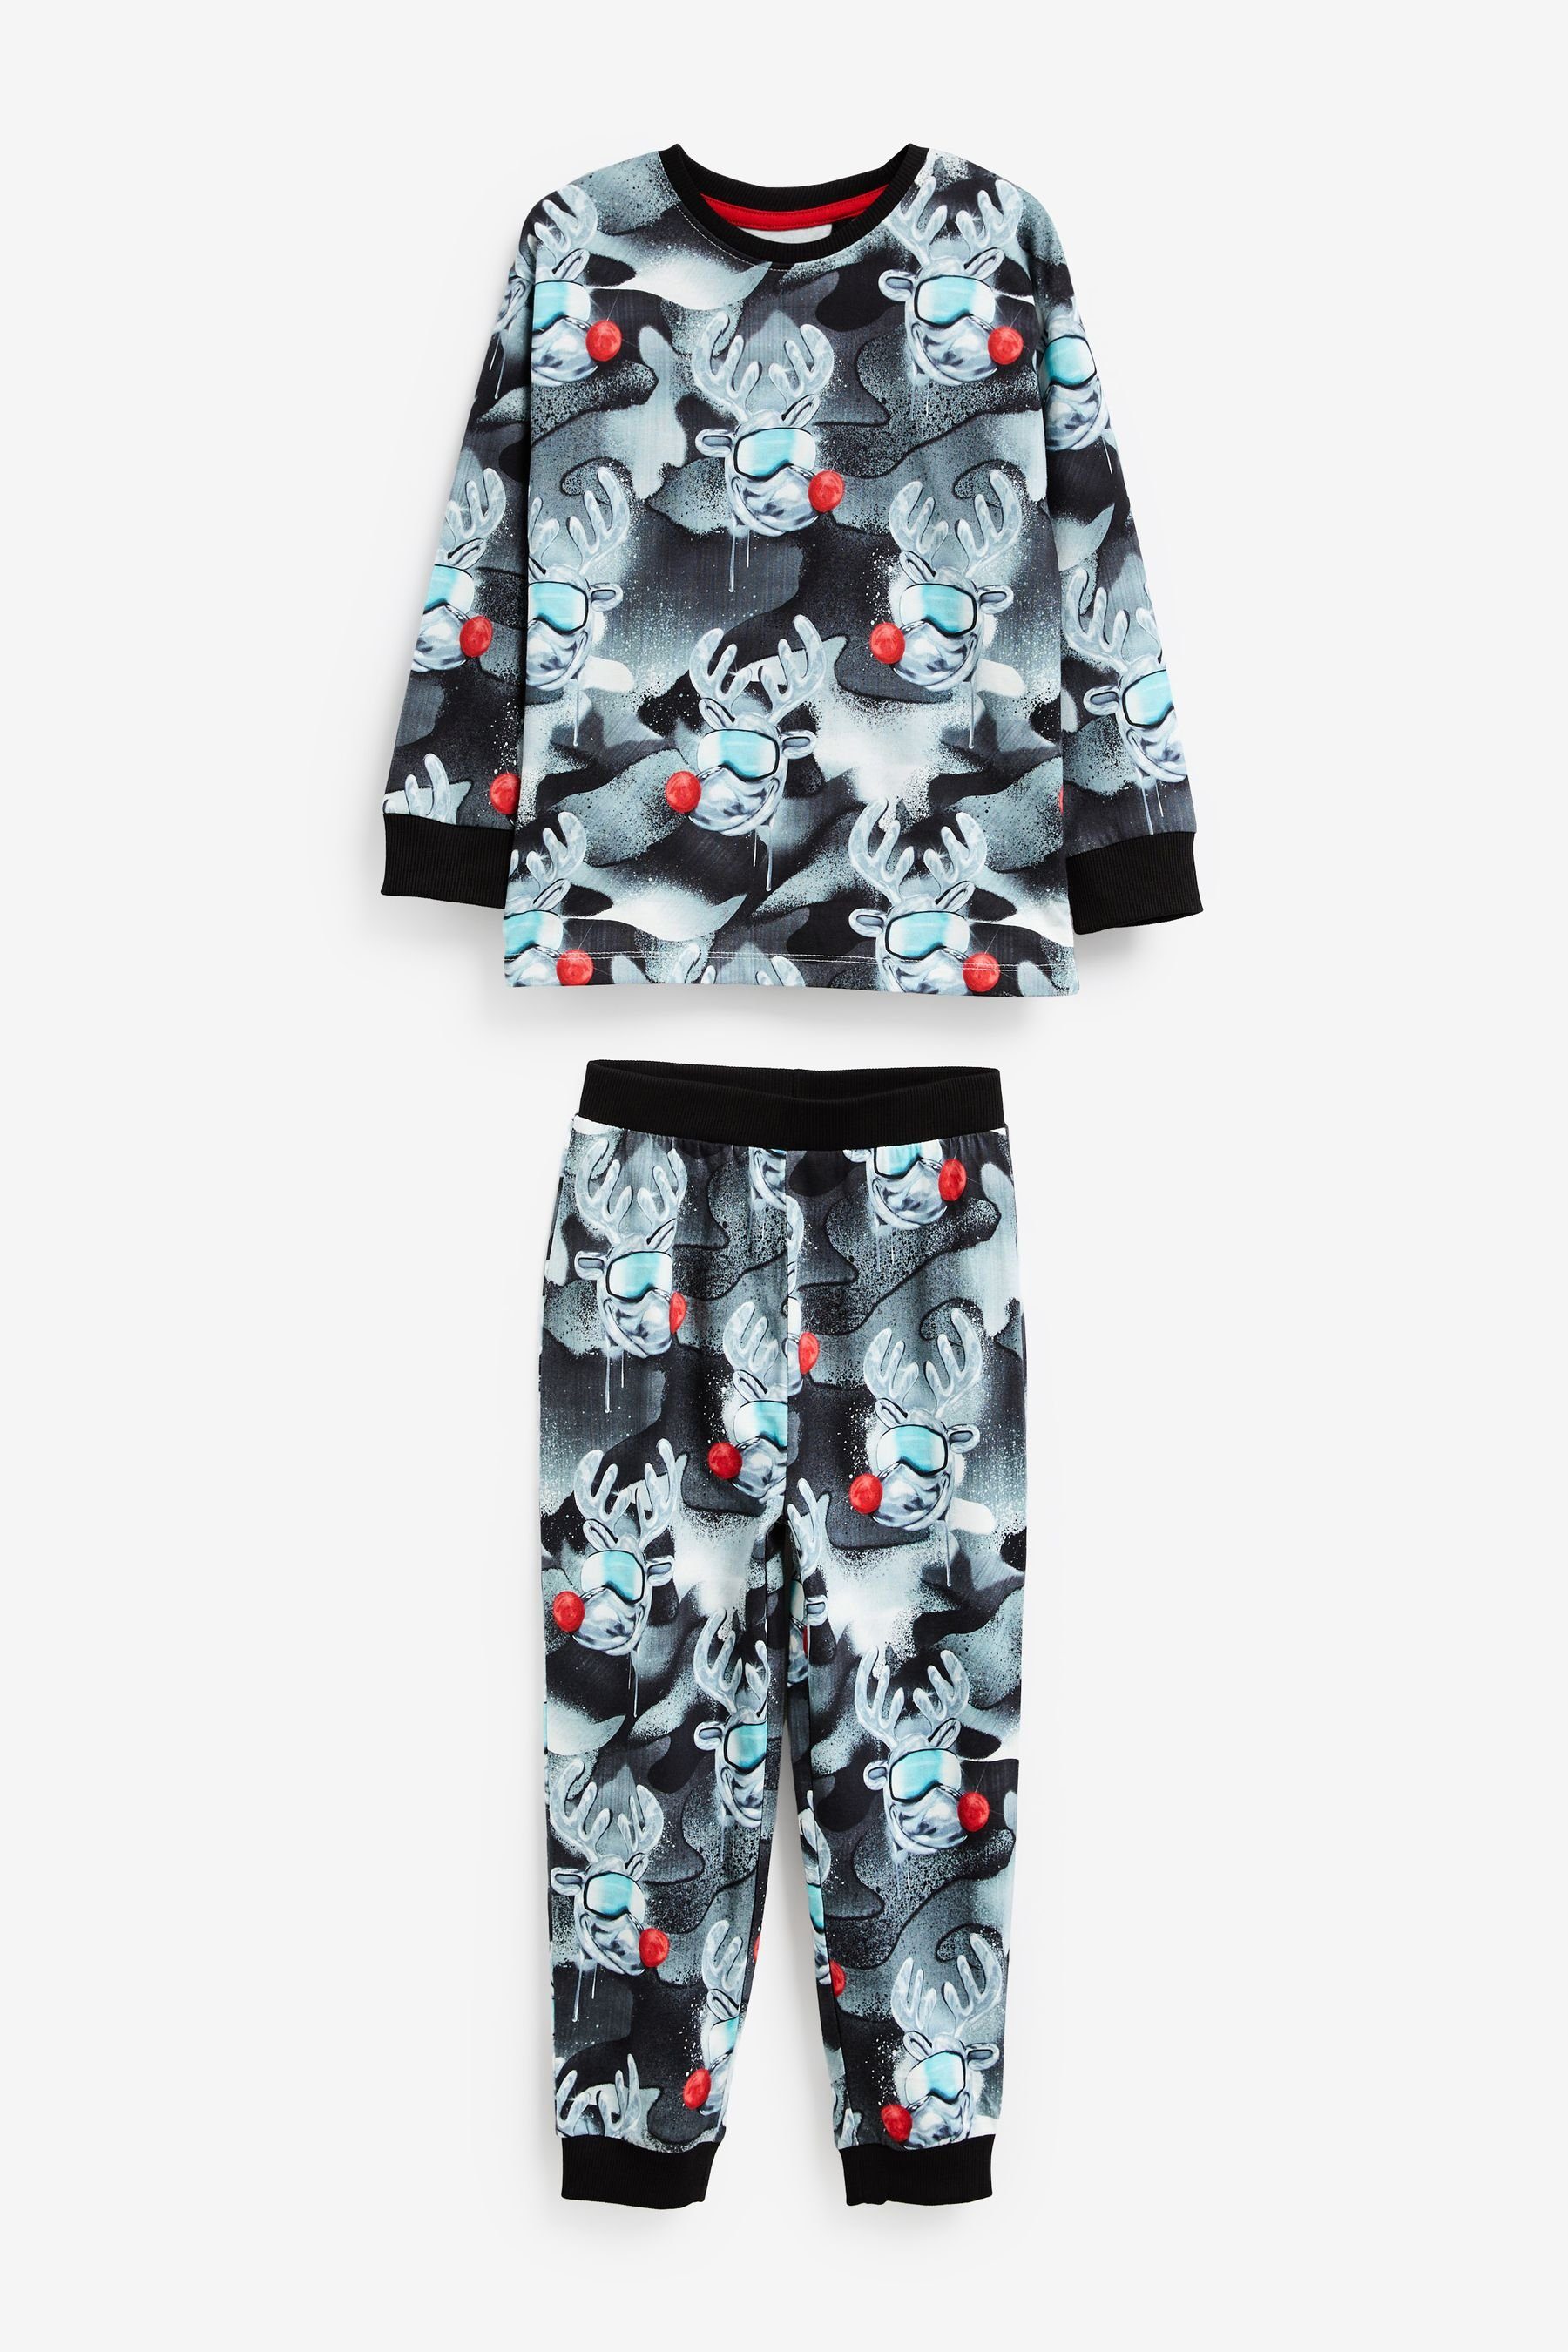 Next Pyjama Weihnachtlicher Pyjama (2 tlg) Monochrome Reindeer